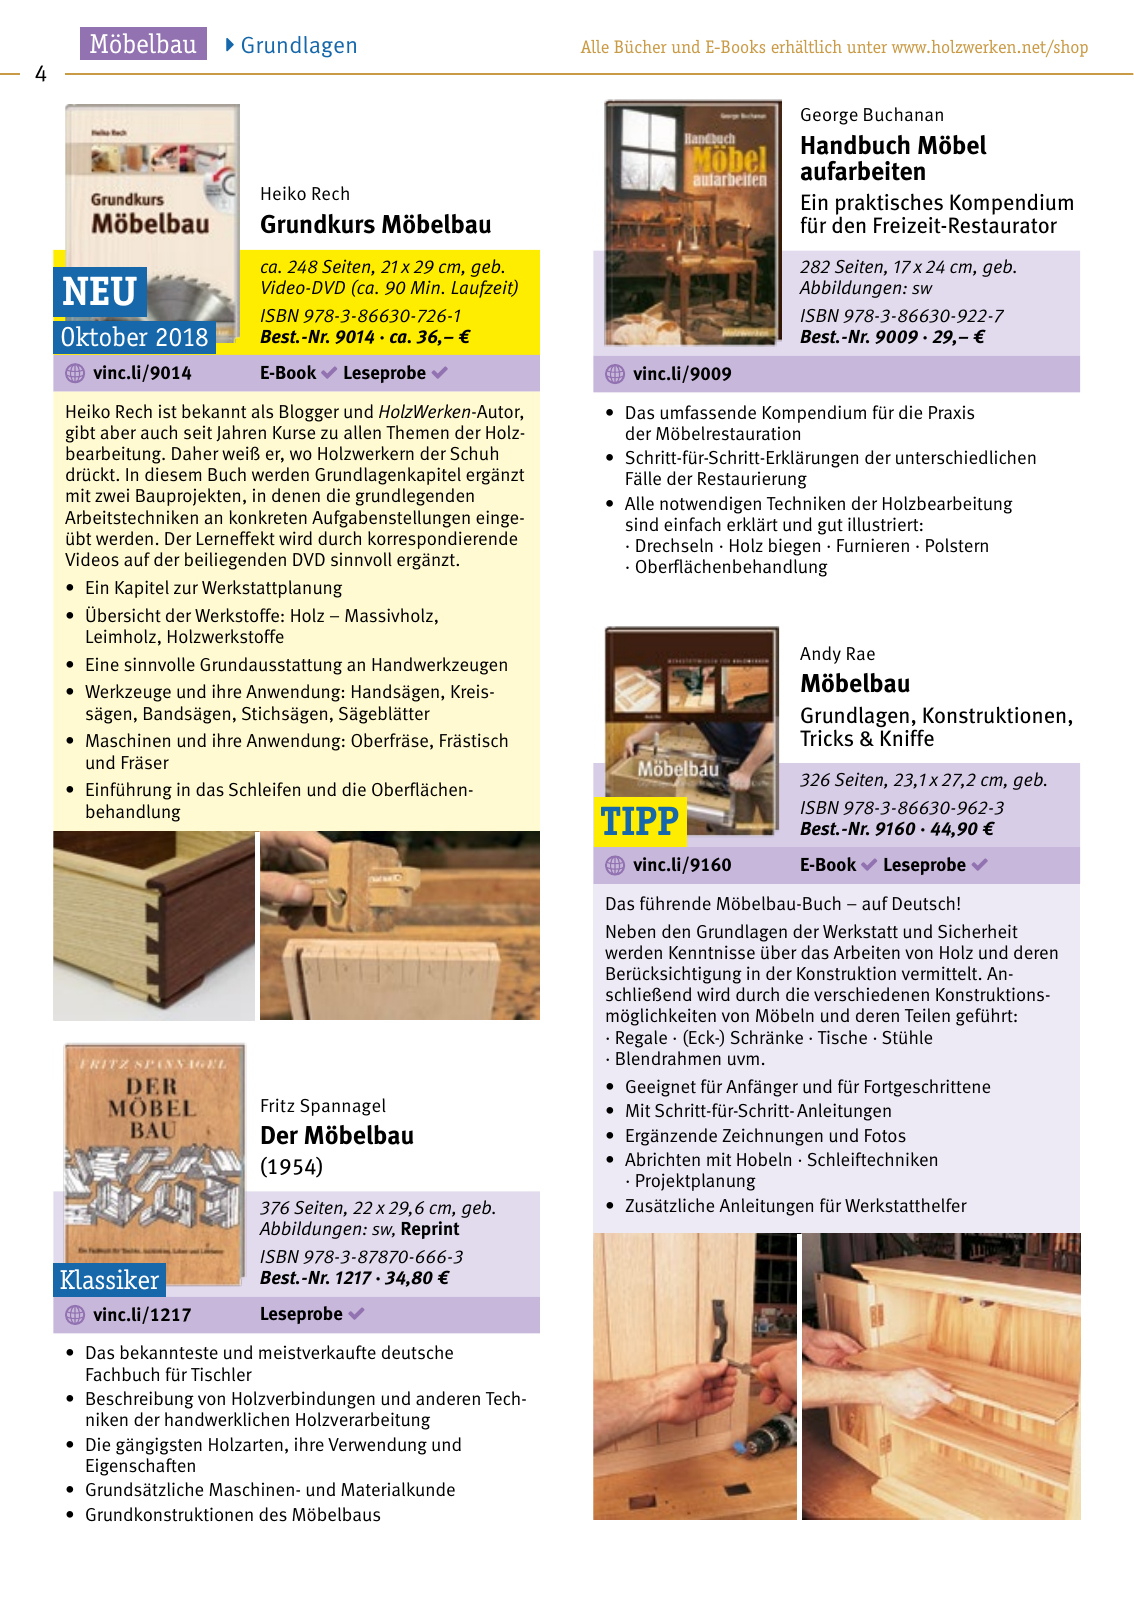 Vorschau HolzWerken Katalog 2019 Seite 4